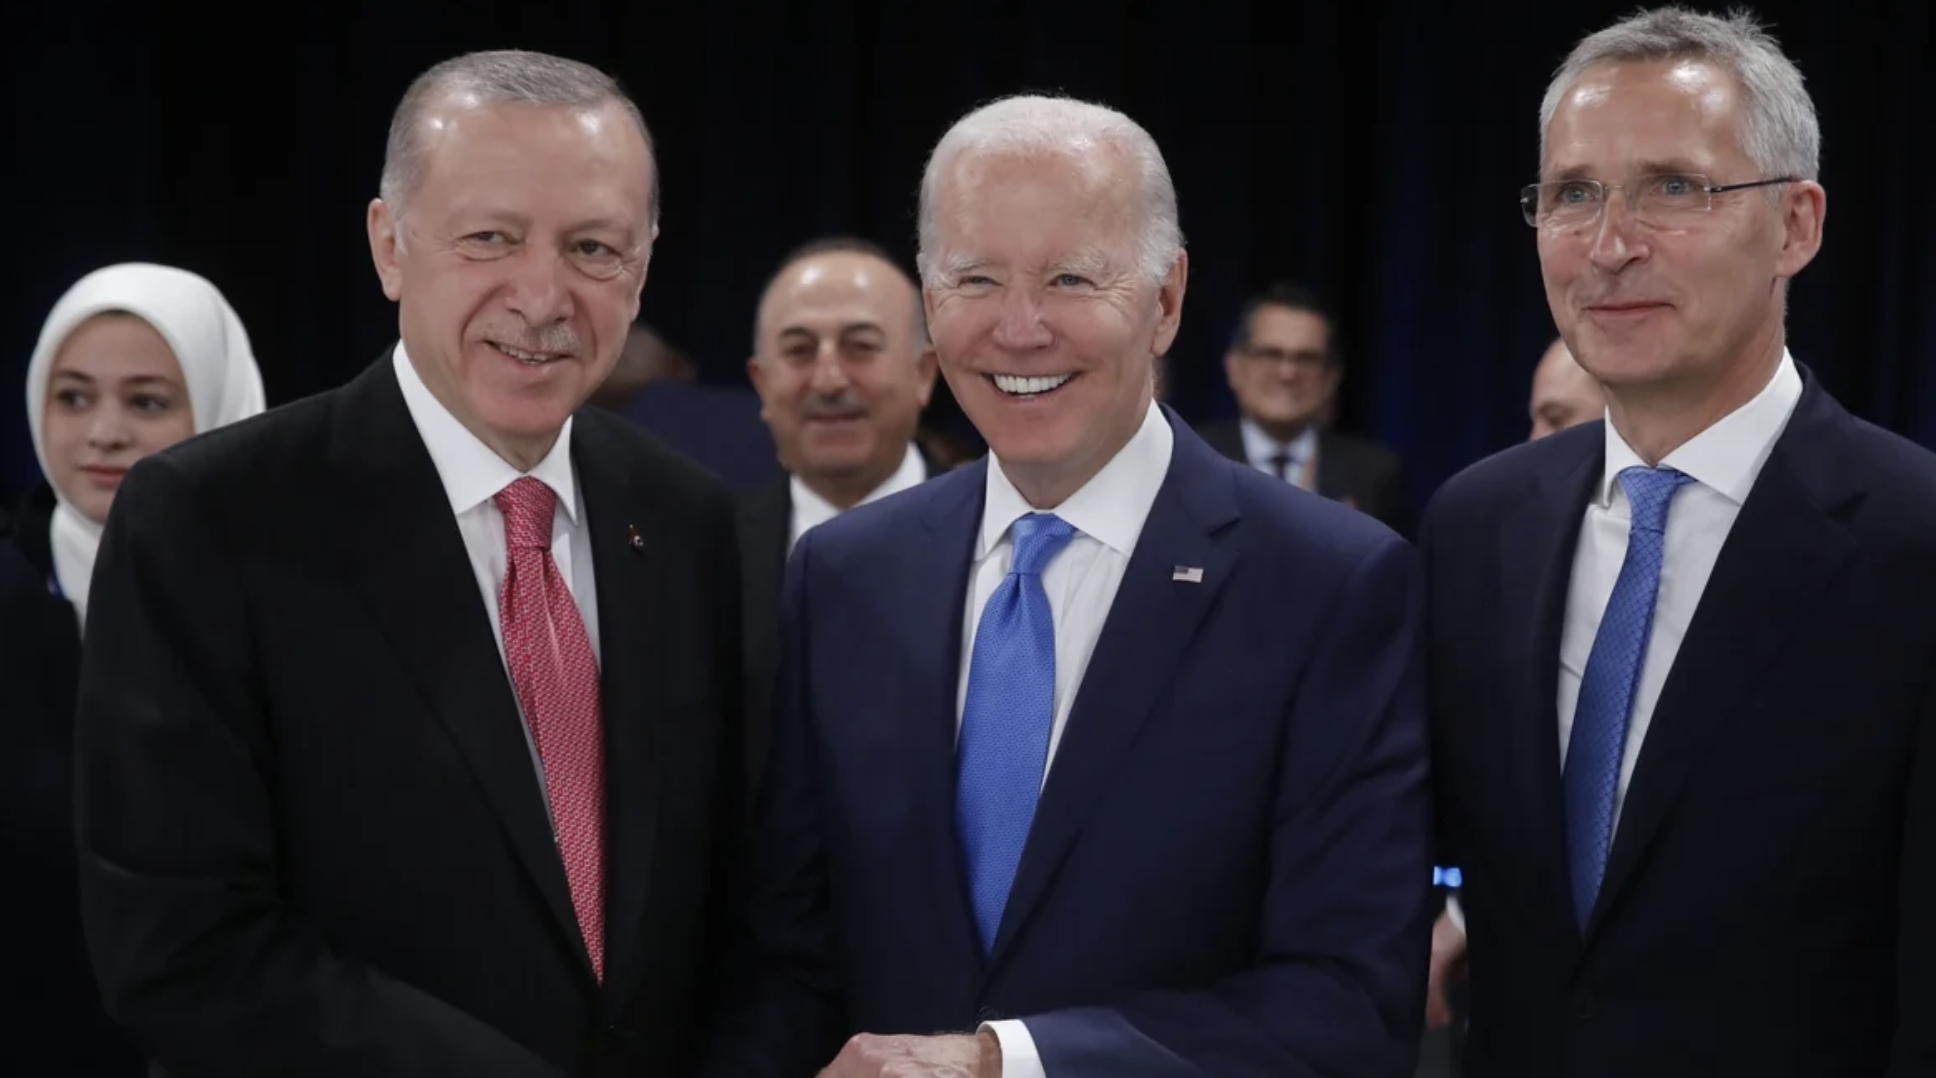 Ταξιδιωτικές οδηγίες της Τουρκίας για ΗΠΑ και Ευρώπη την ώρα που η Ουάσινγκτον προσπαθεί να «συνετίσει» τον Ερντογάν